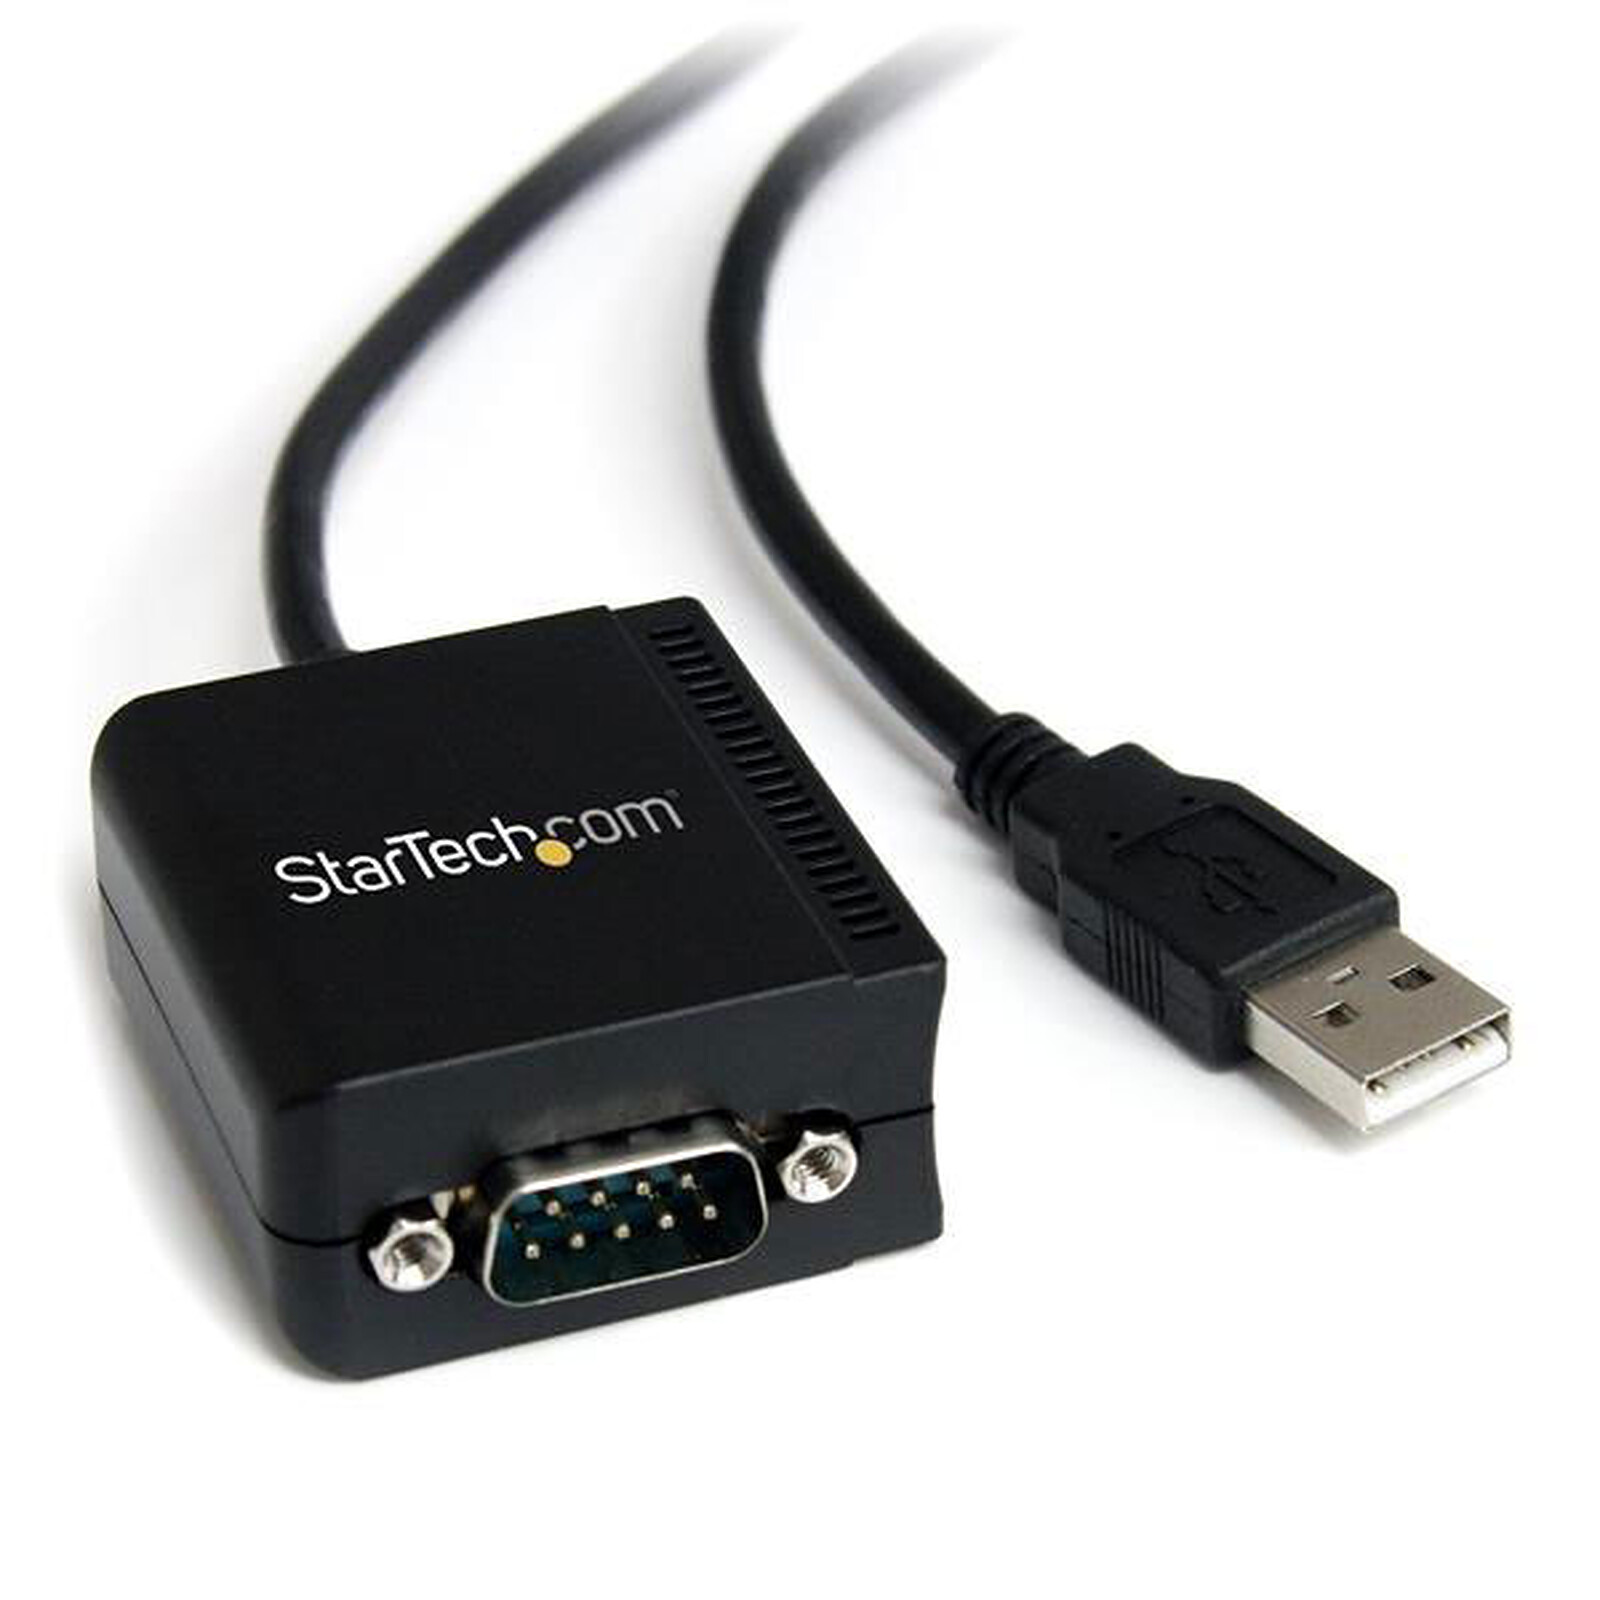 Adaptateur et convertisseur GENERIQUE CABLING® Rallonge USB 2.0 - A mâle /  A femelle - 50cm